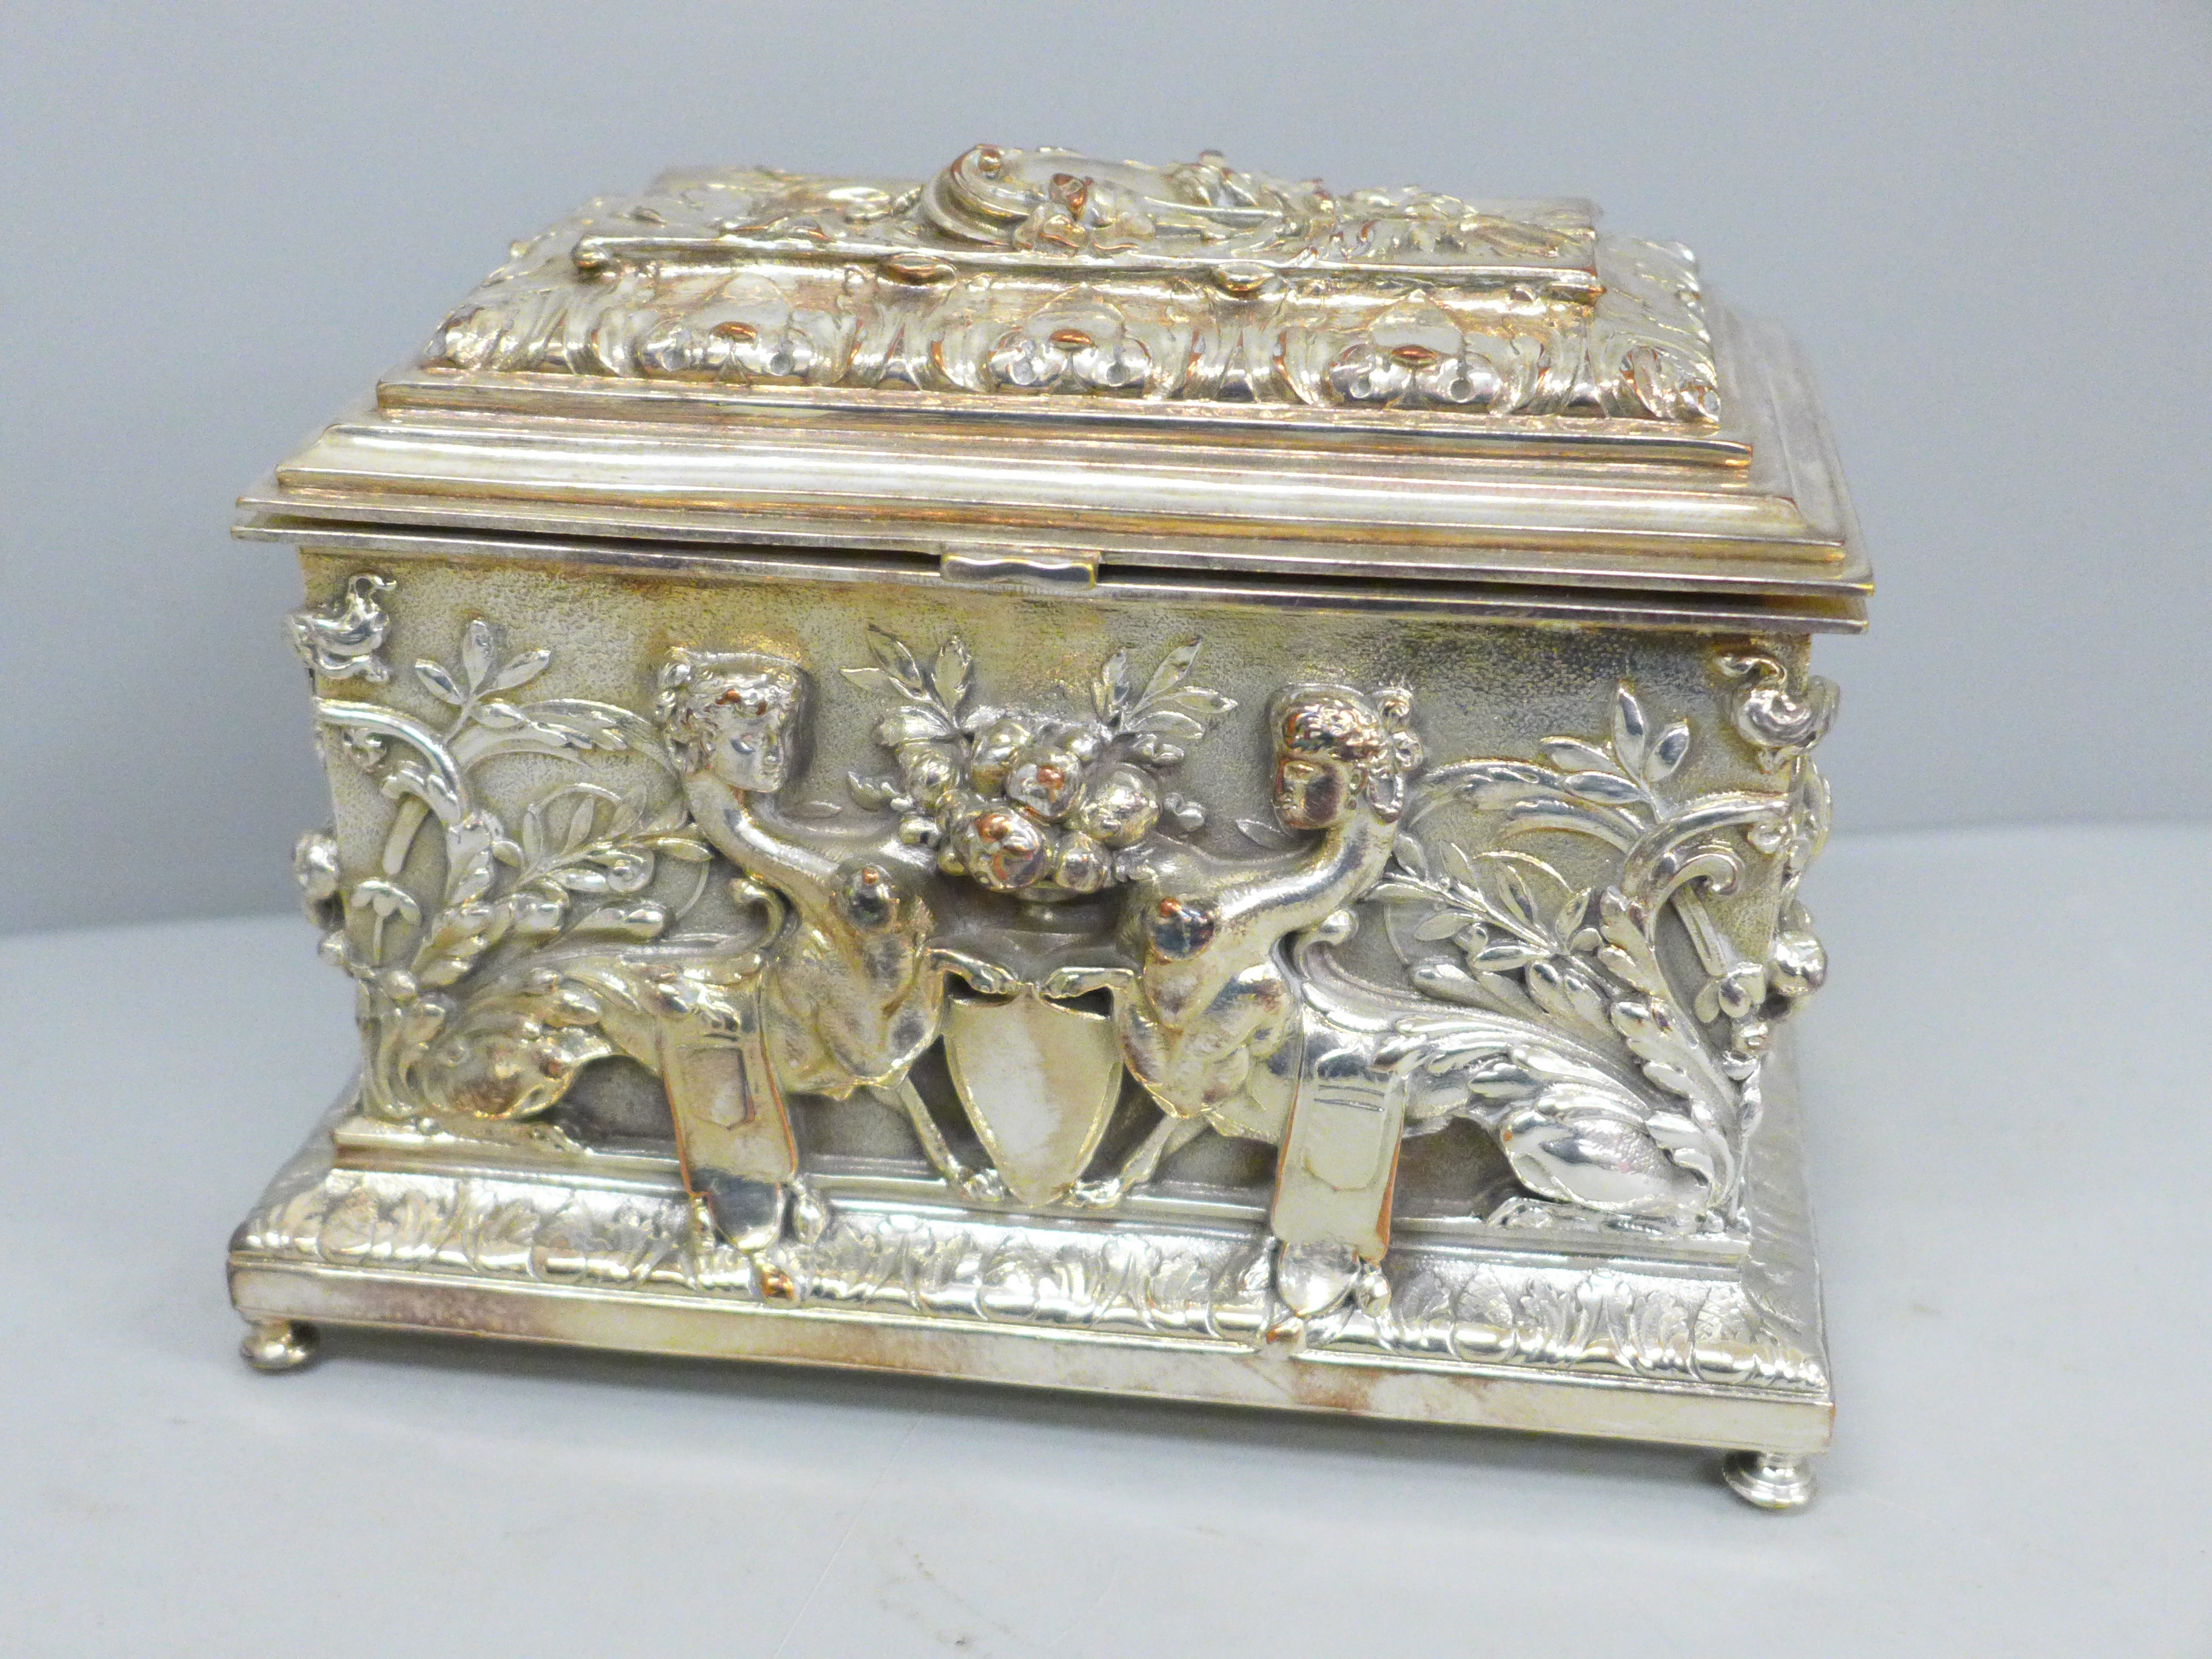 A Sheffield plate on copper jewellery casket, 16cm x 9.5cm